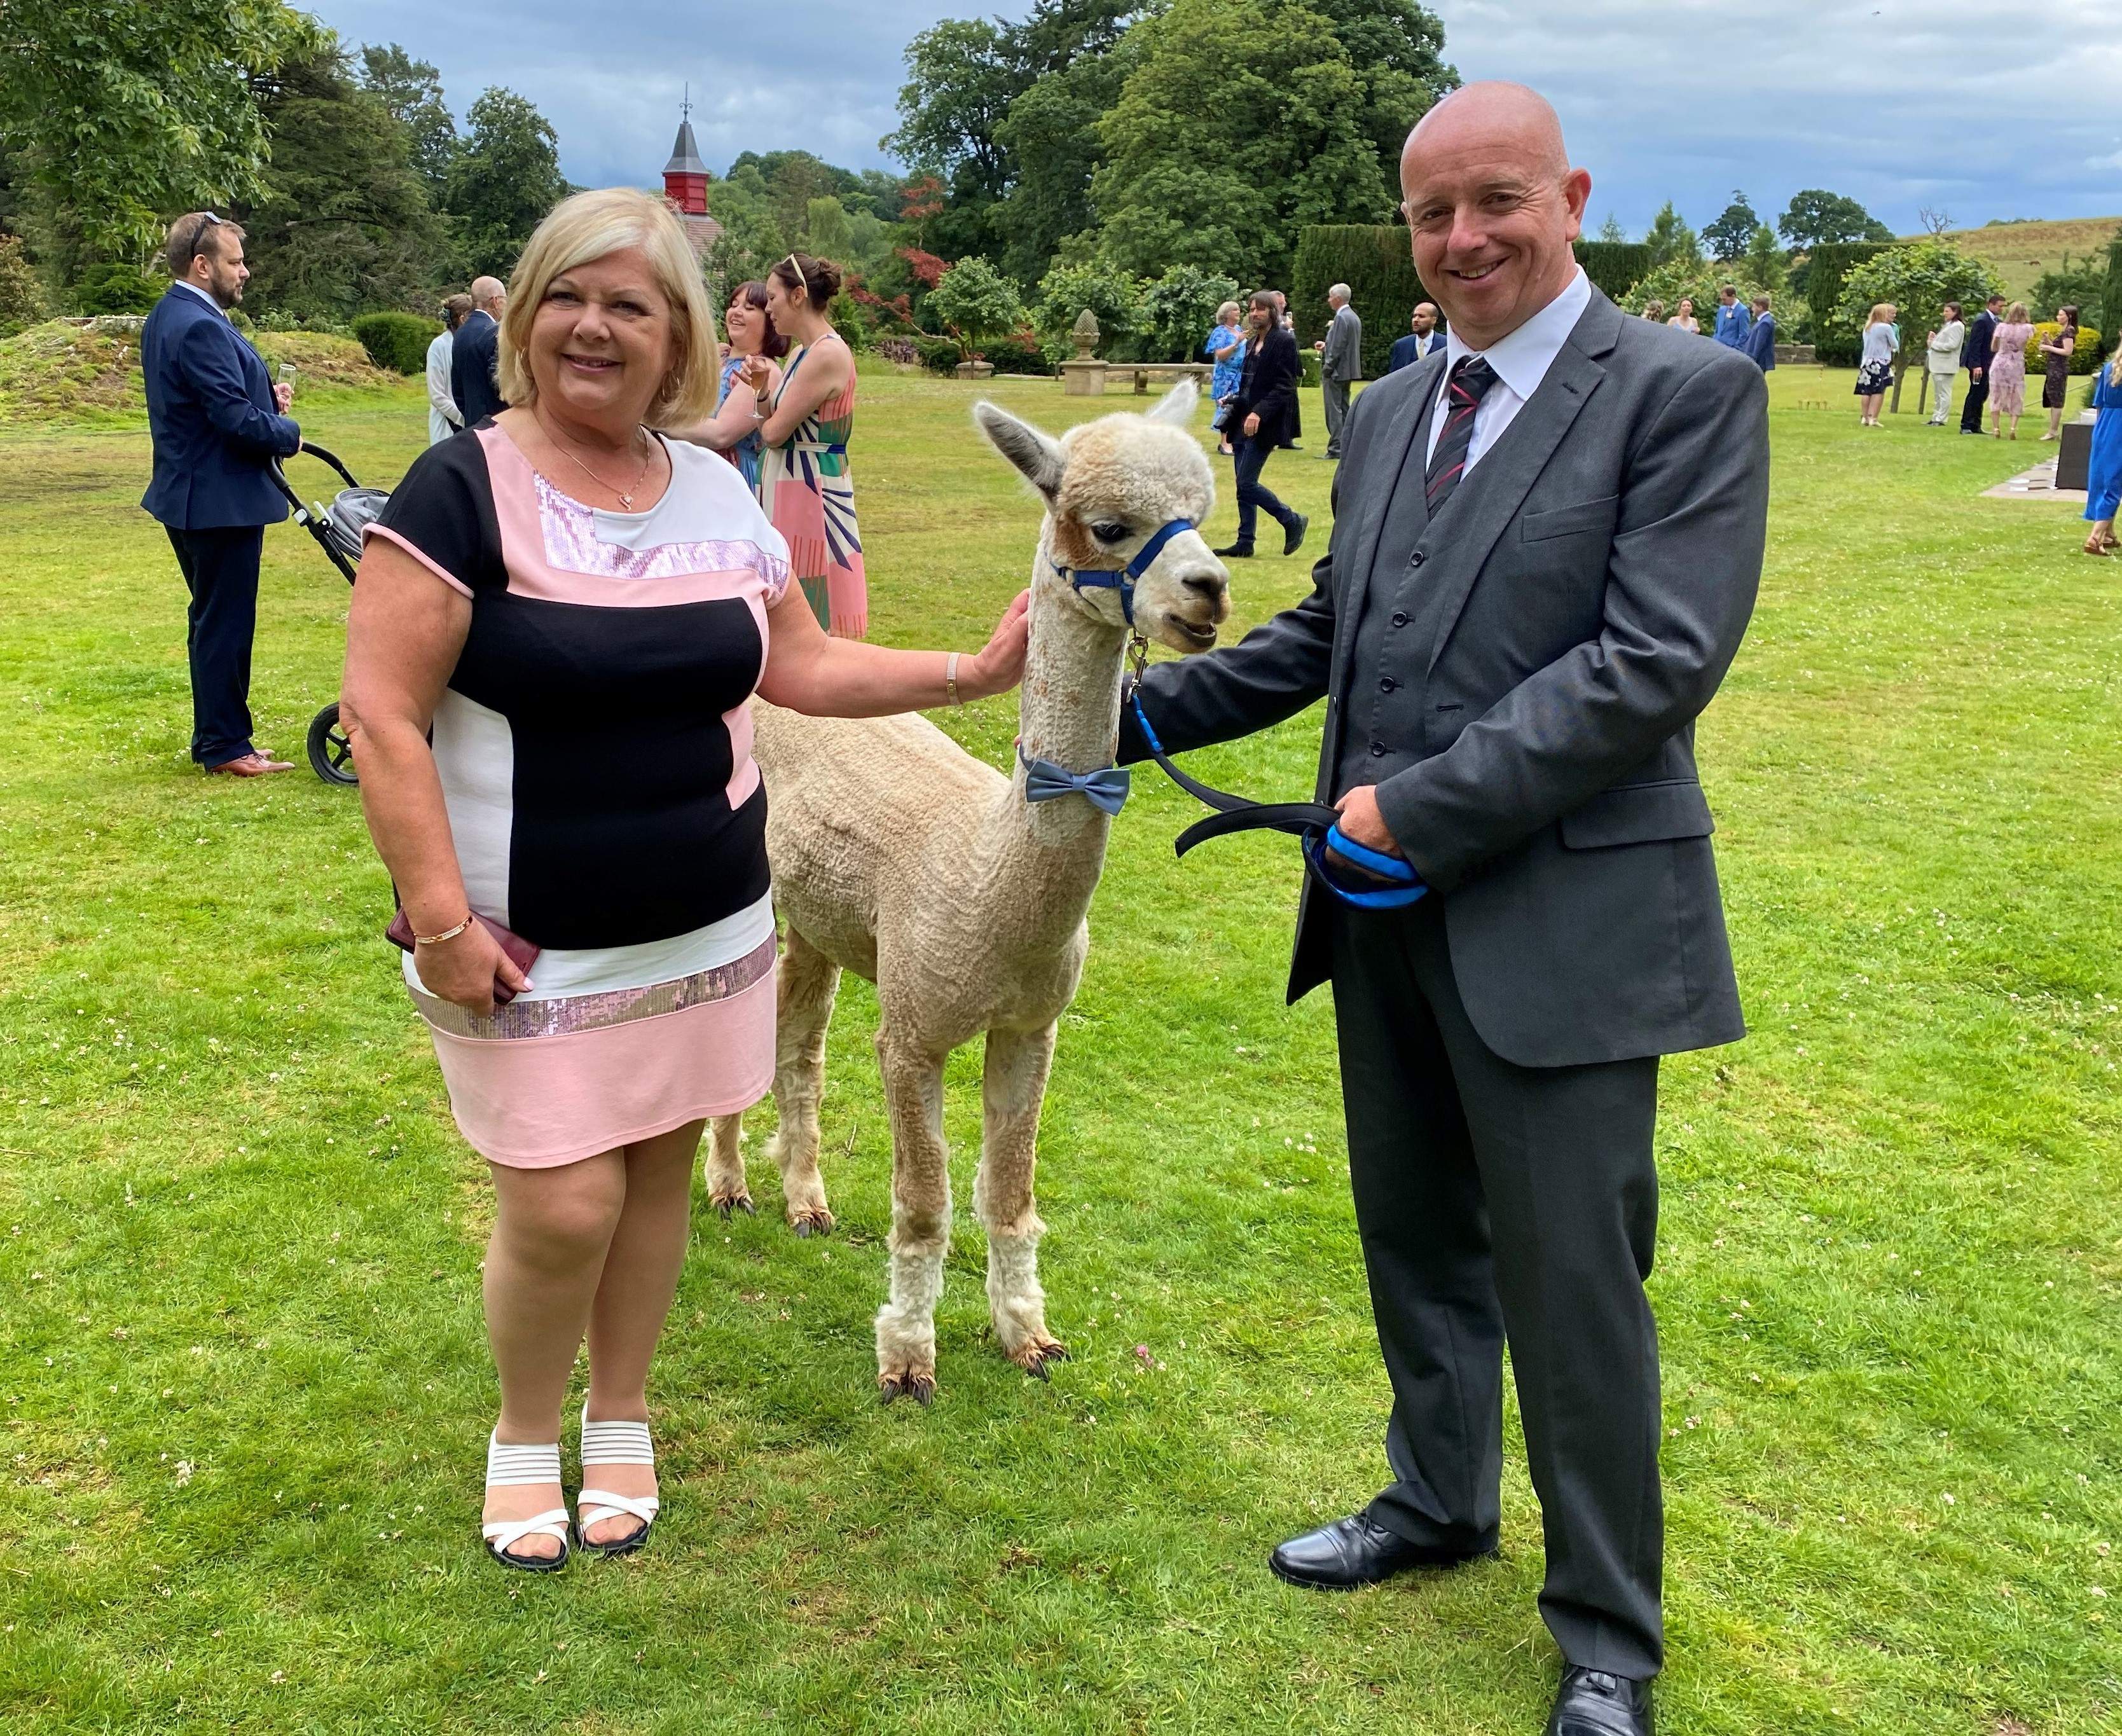 Alpaca and wedding guests